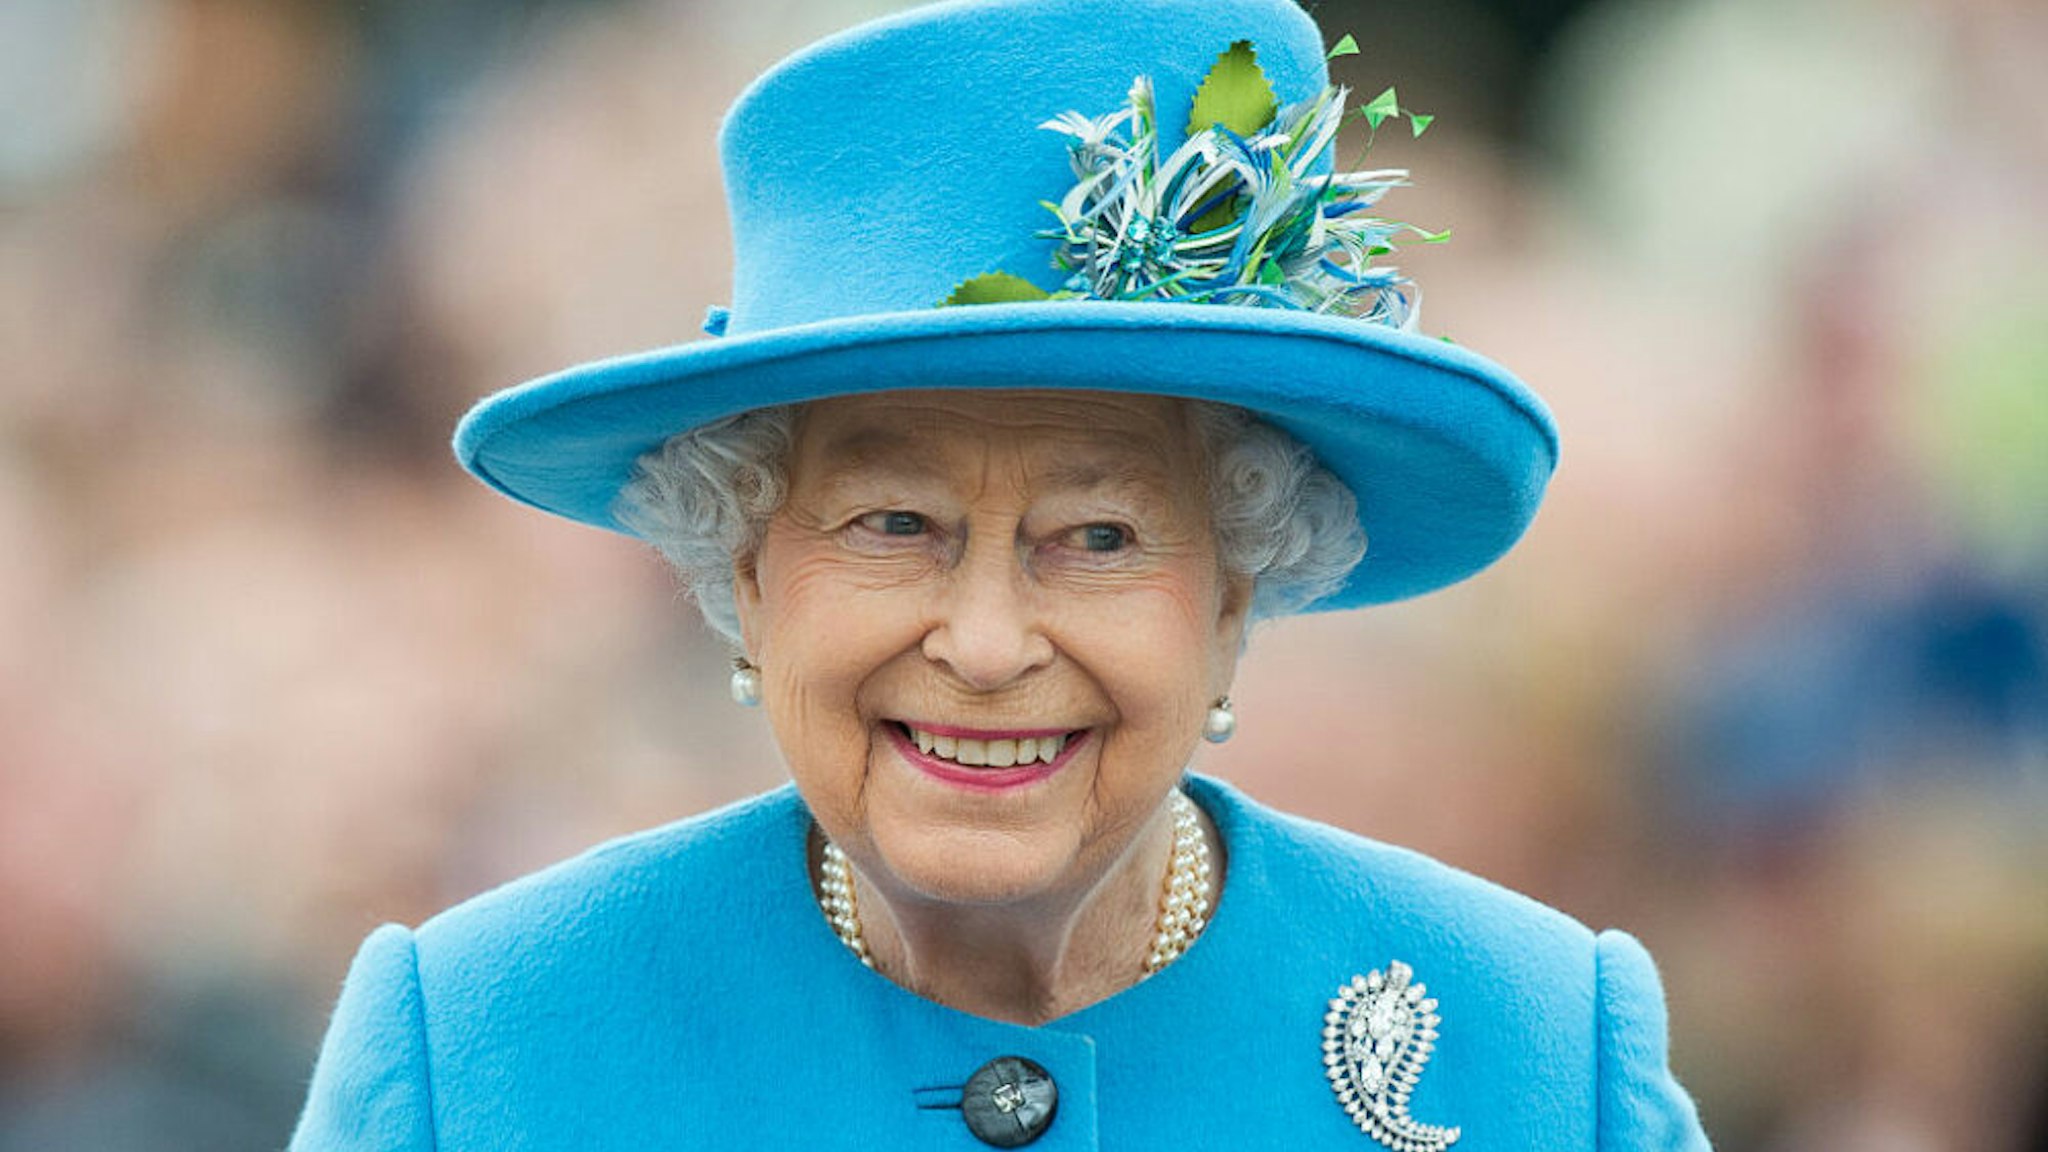 POUNDBURY, DORSET - OCTOBER 27: Queen Elizabeth II tours Queen Mother Square on October 27, 2016 in Poundbury, Dorset.